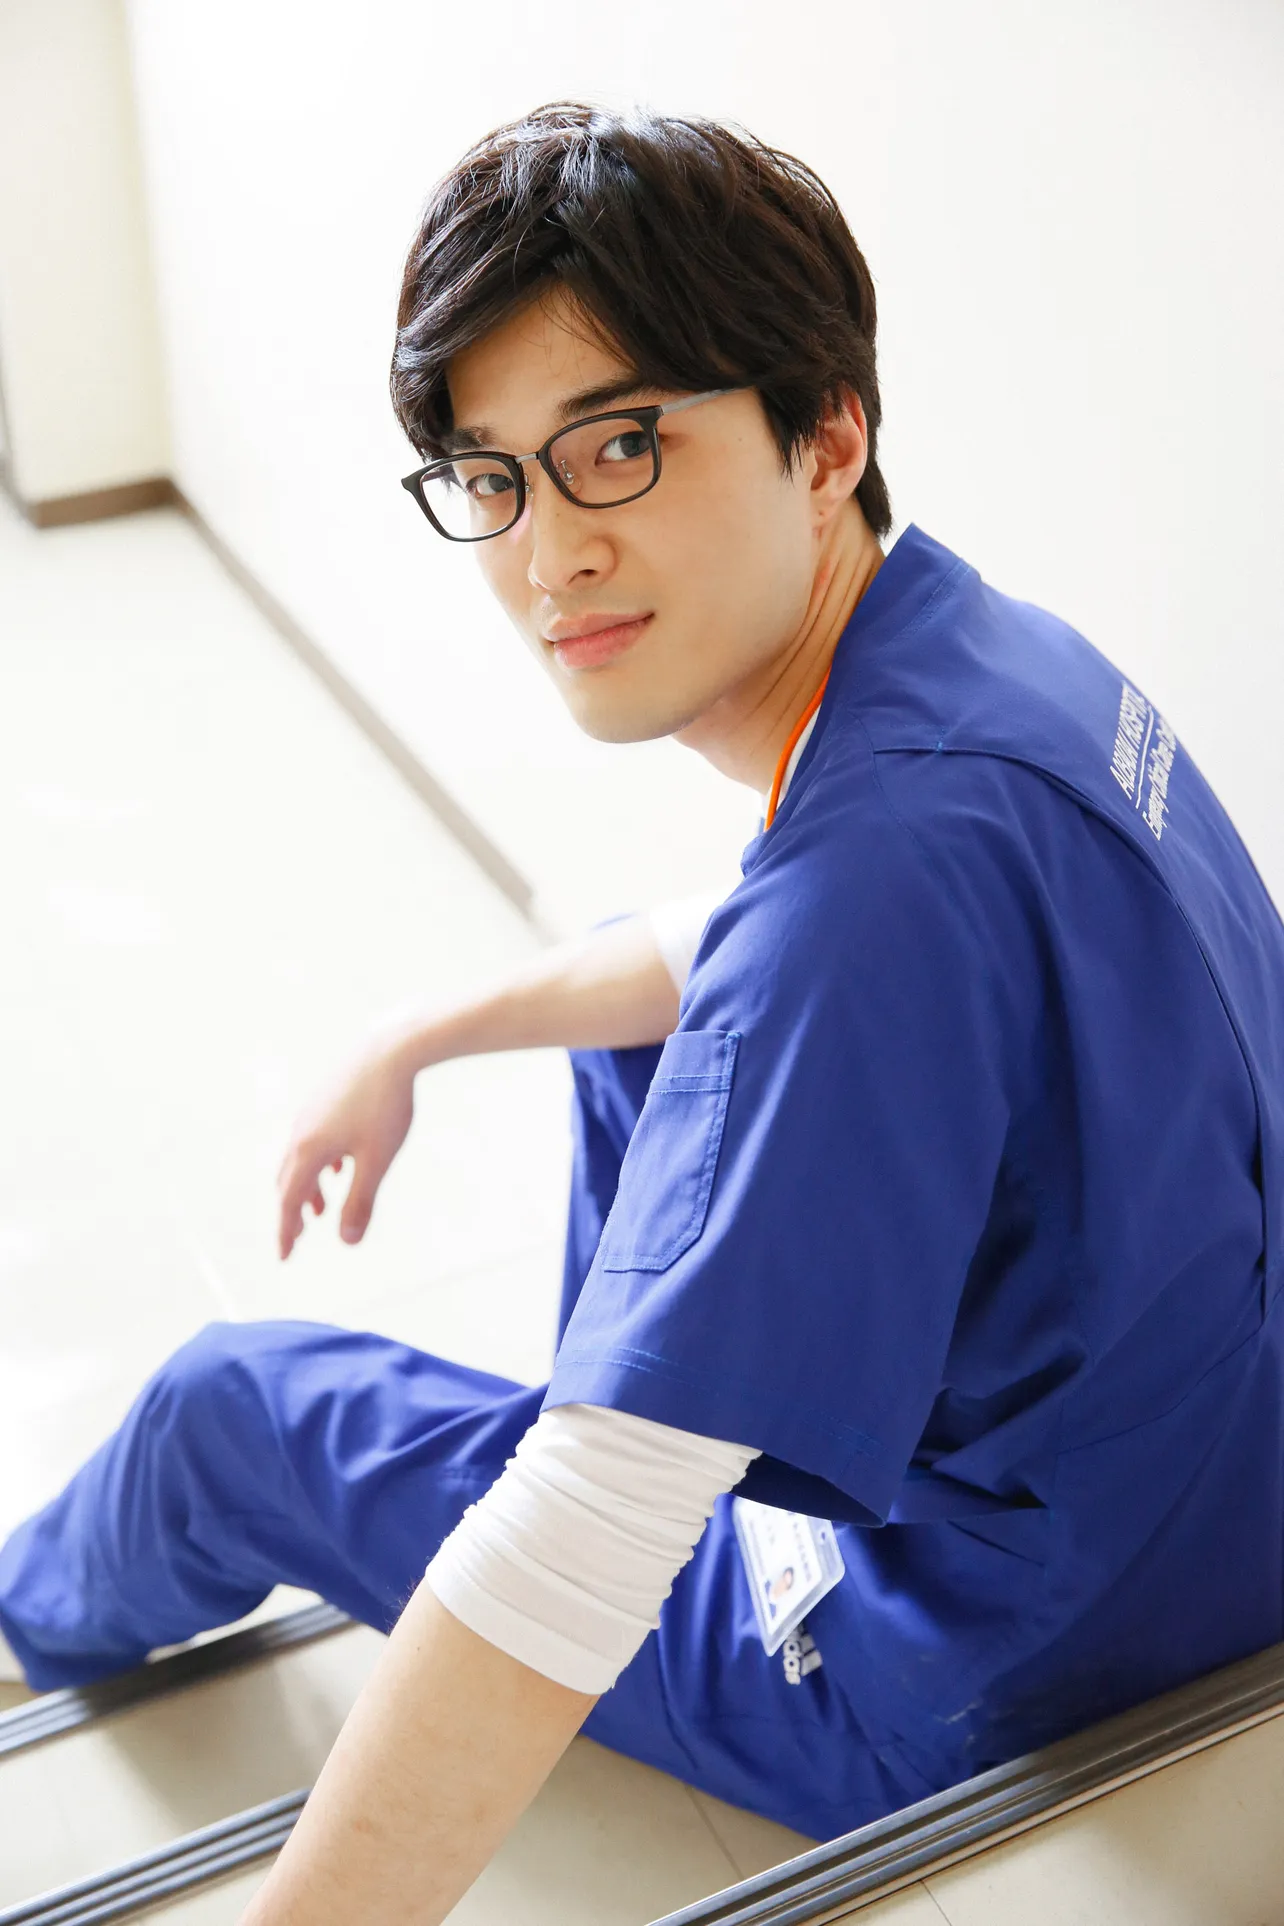 放送中のドラマ「病室で念仏を唱えないでください」で、松本の同僚の救命救急医・吉田太郎を演じている谷恭輔